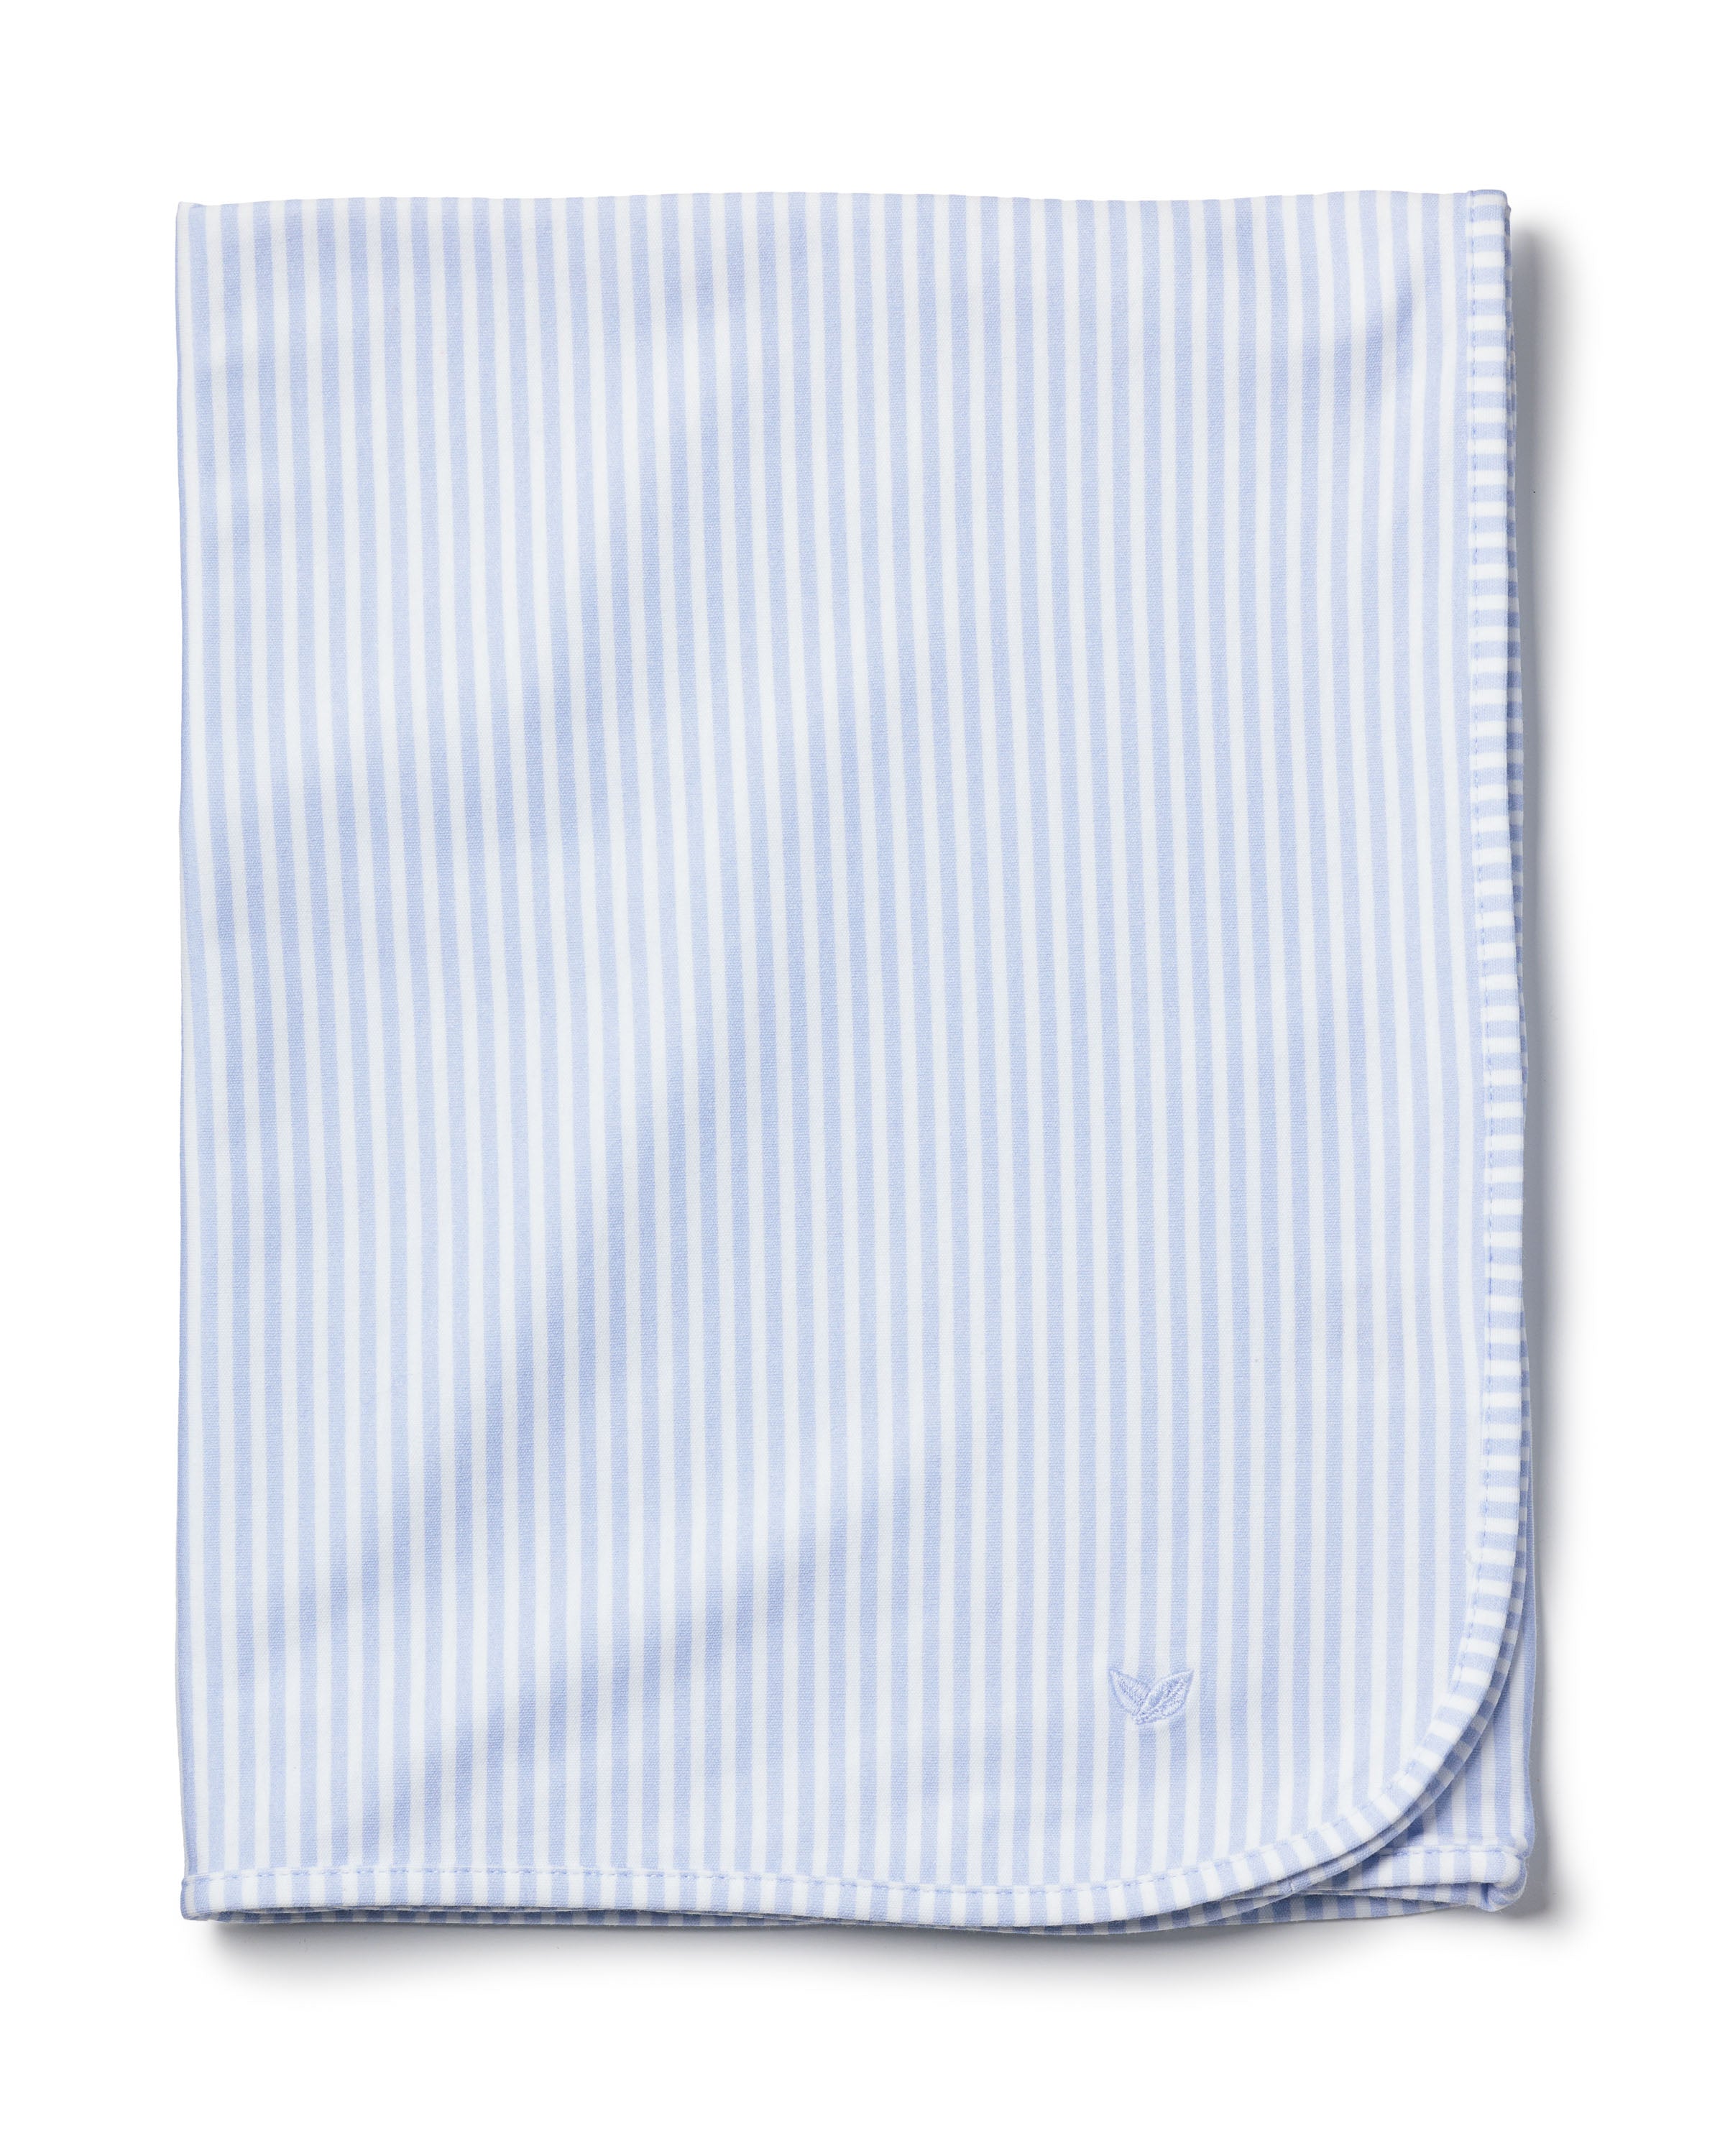 Pima Baby Blanket in Blue Stripes